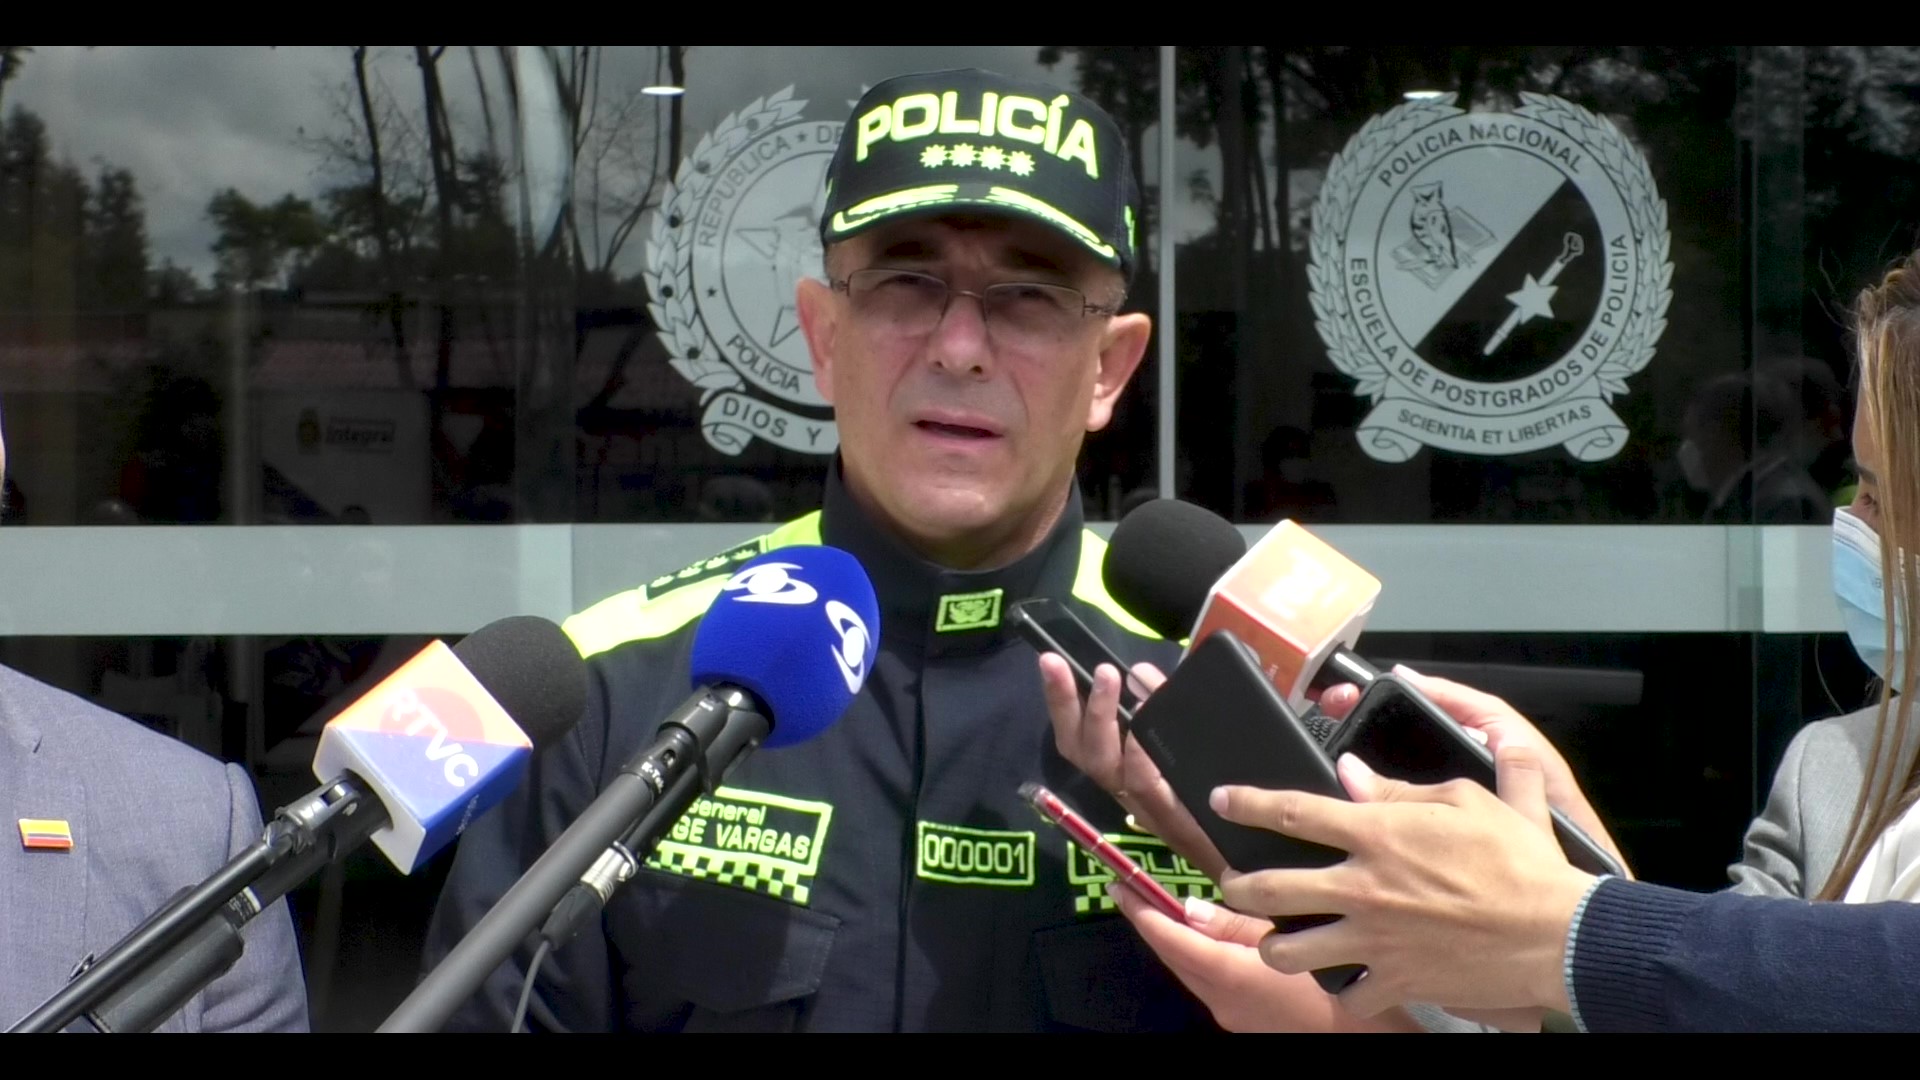 “El gobernador Caicedo tiene el esquema de seguridad más grande de Colombia hablando de Policía”: Director general Jorge Luis Vargas